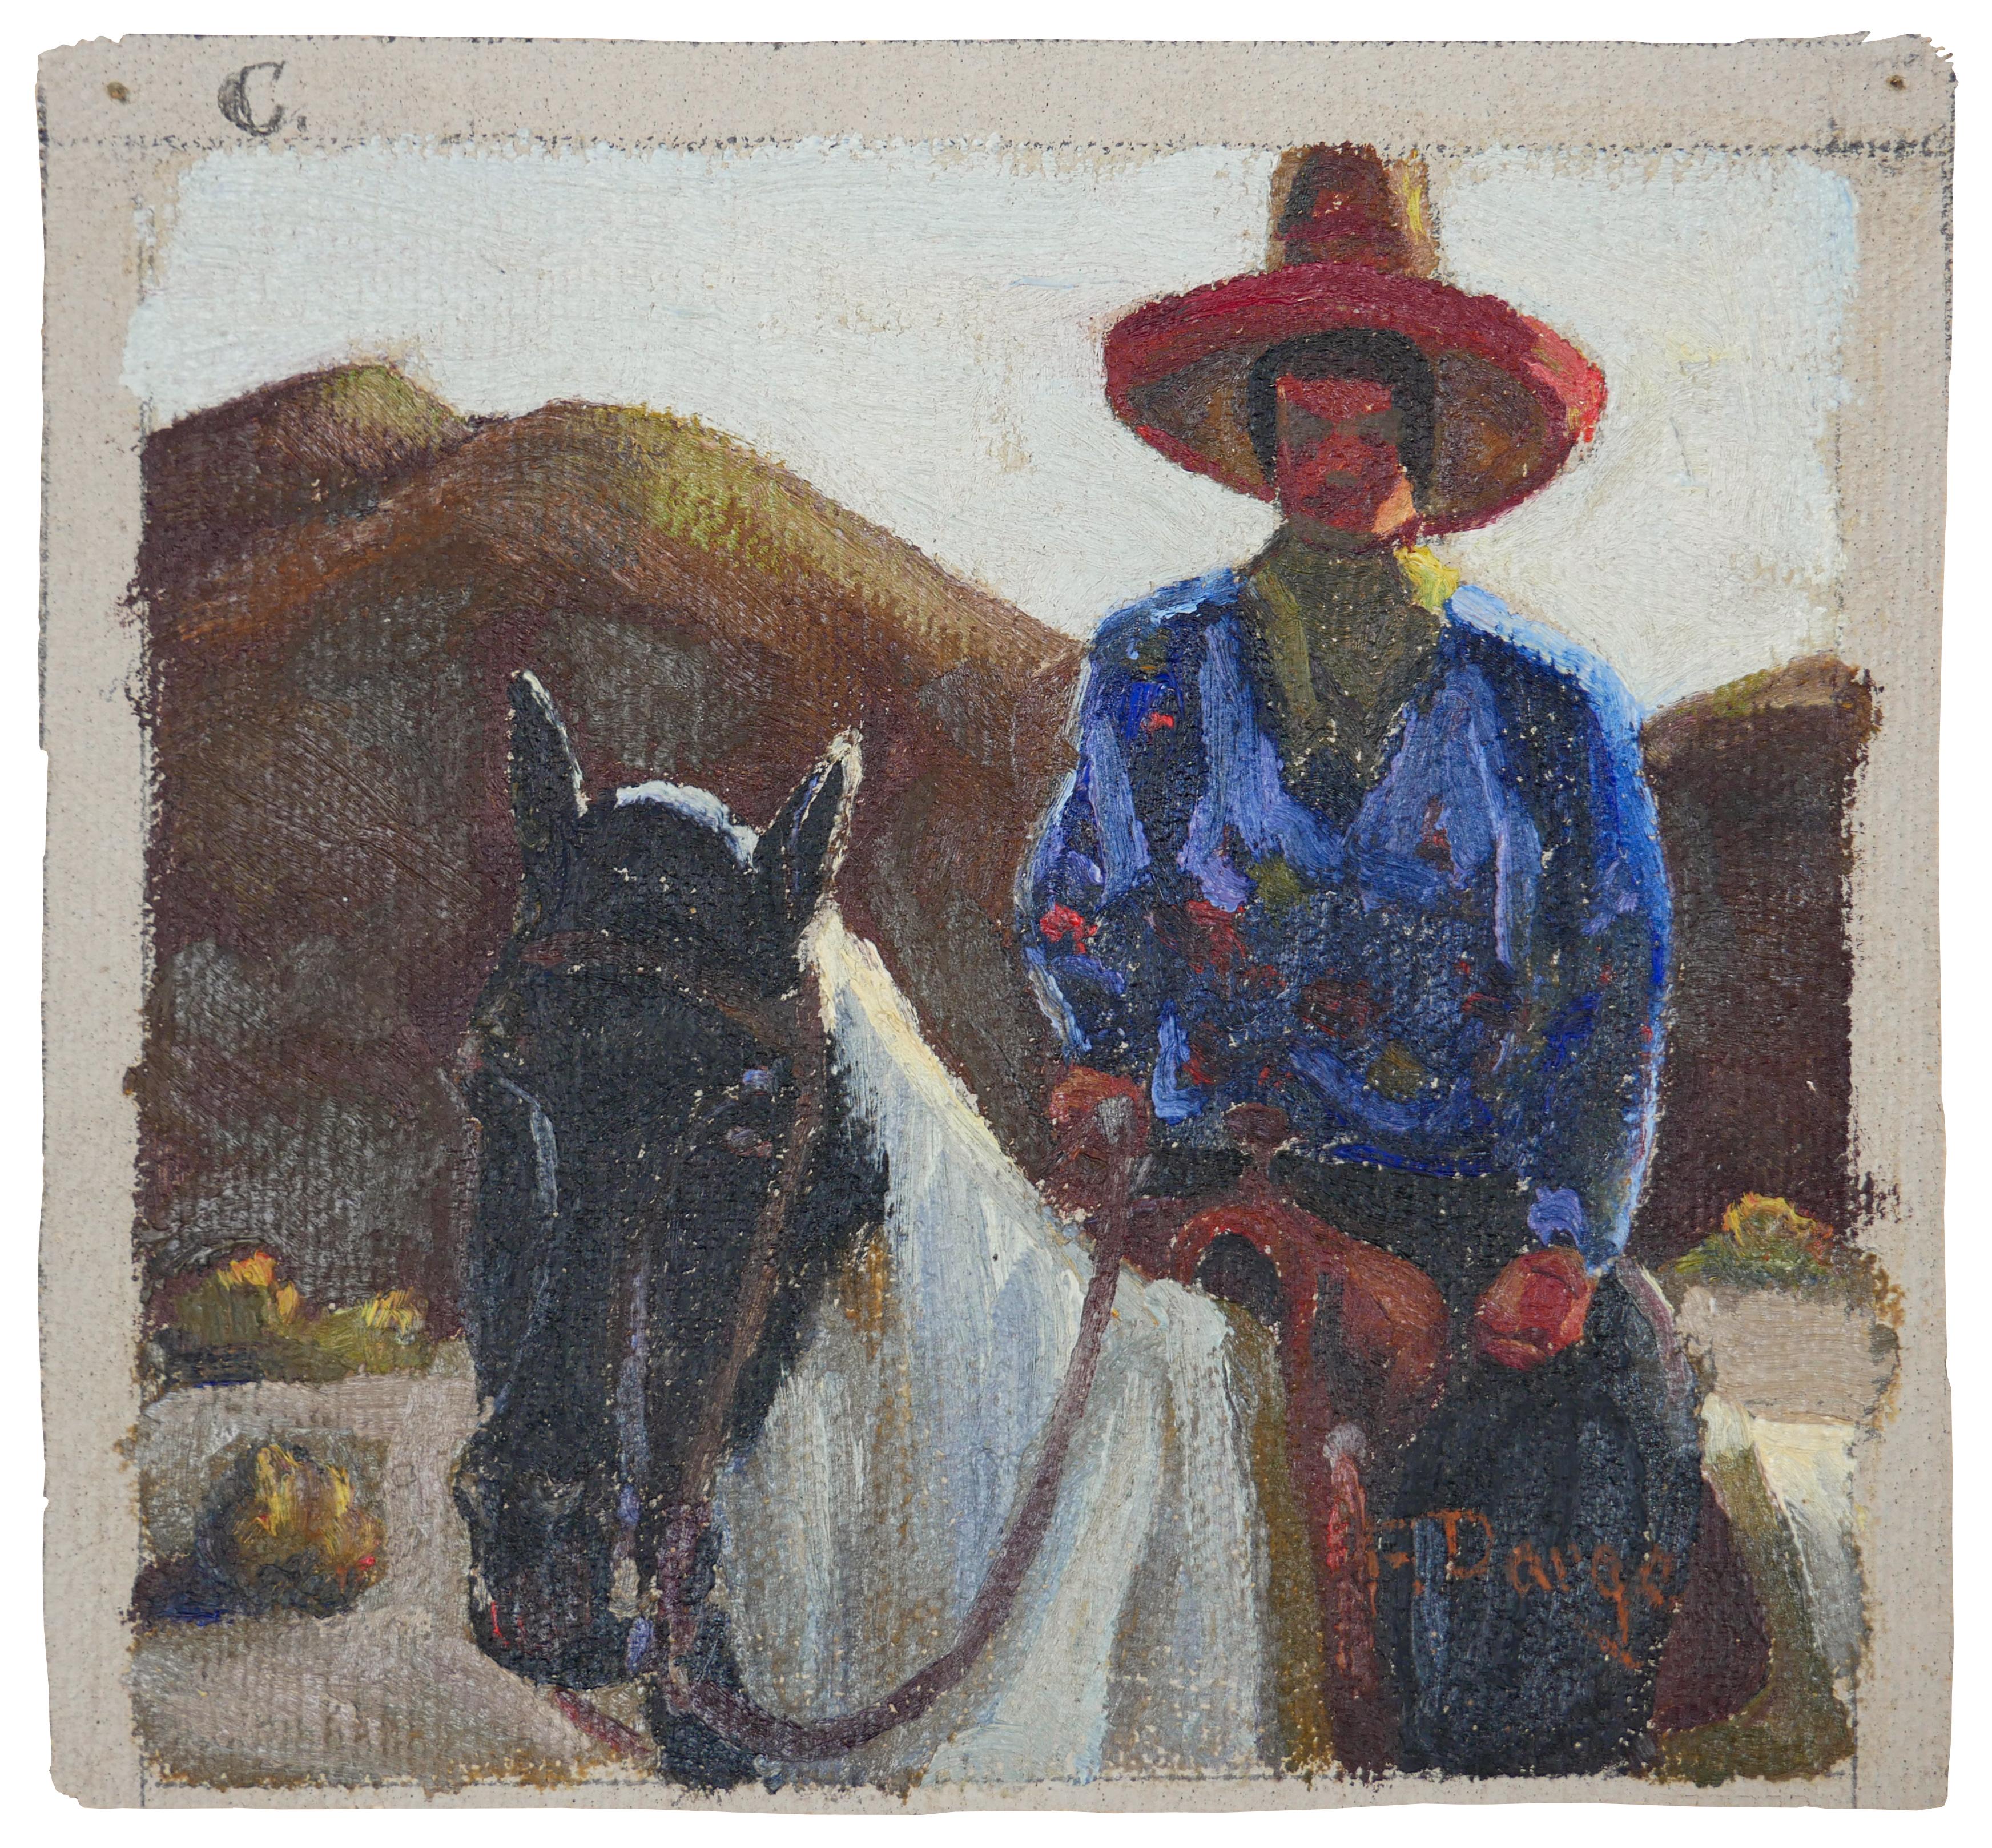 Peinture impressionniste abstraite bleue, rouge et brune d'un cow-boy sur un cheval